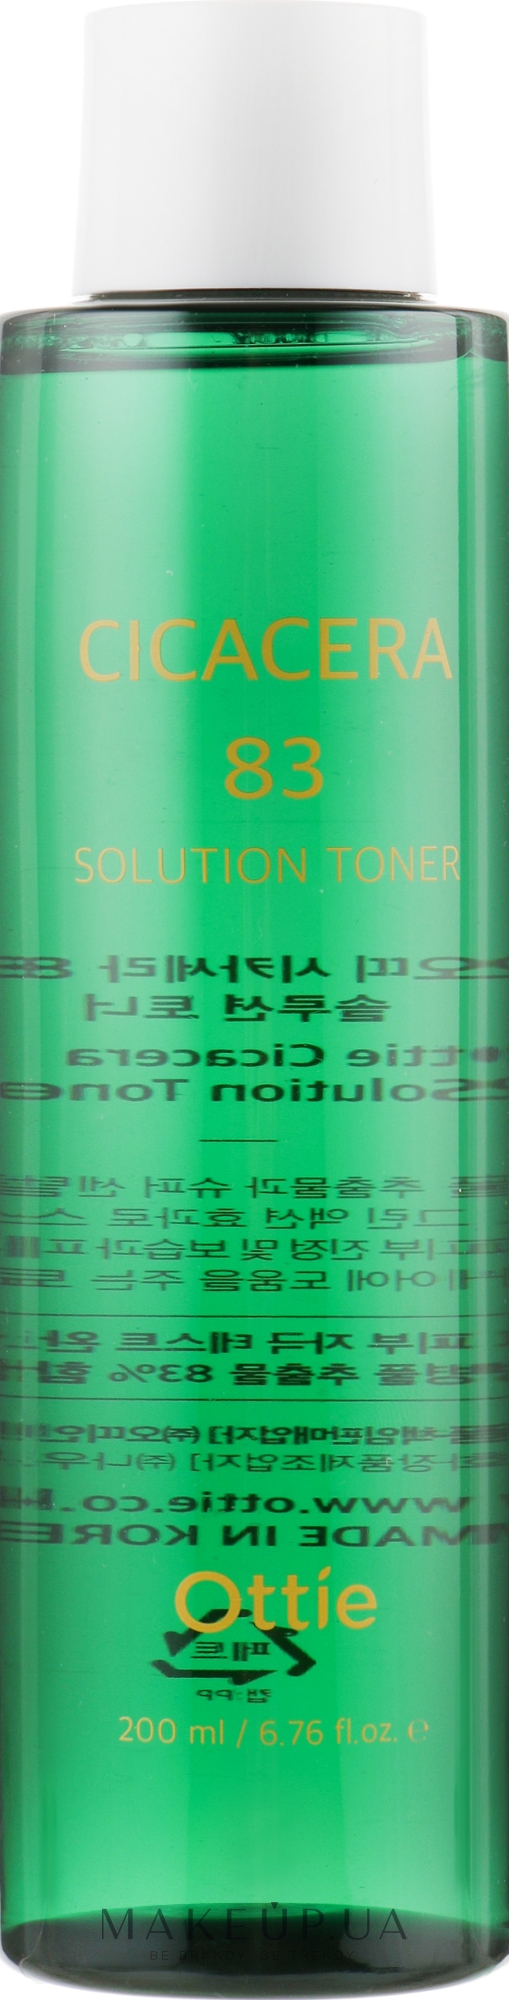 Успокаивающий тонер для сужения пор - Ottie Cicacera 83 Solution Toner — фото 200ml